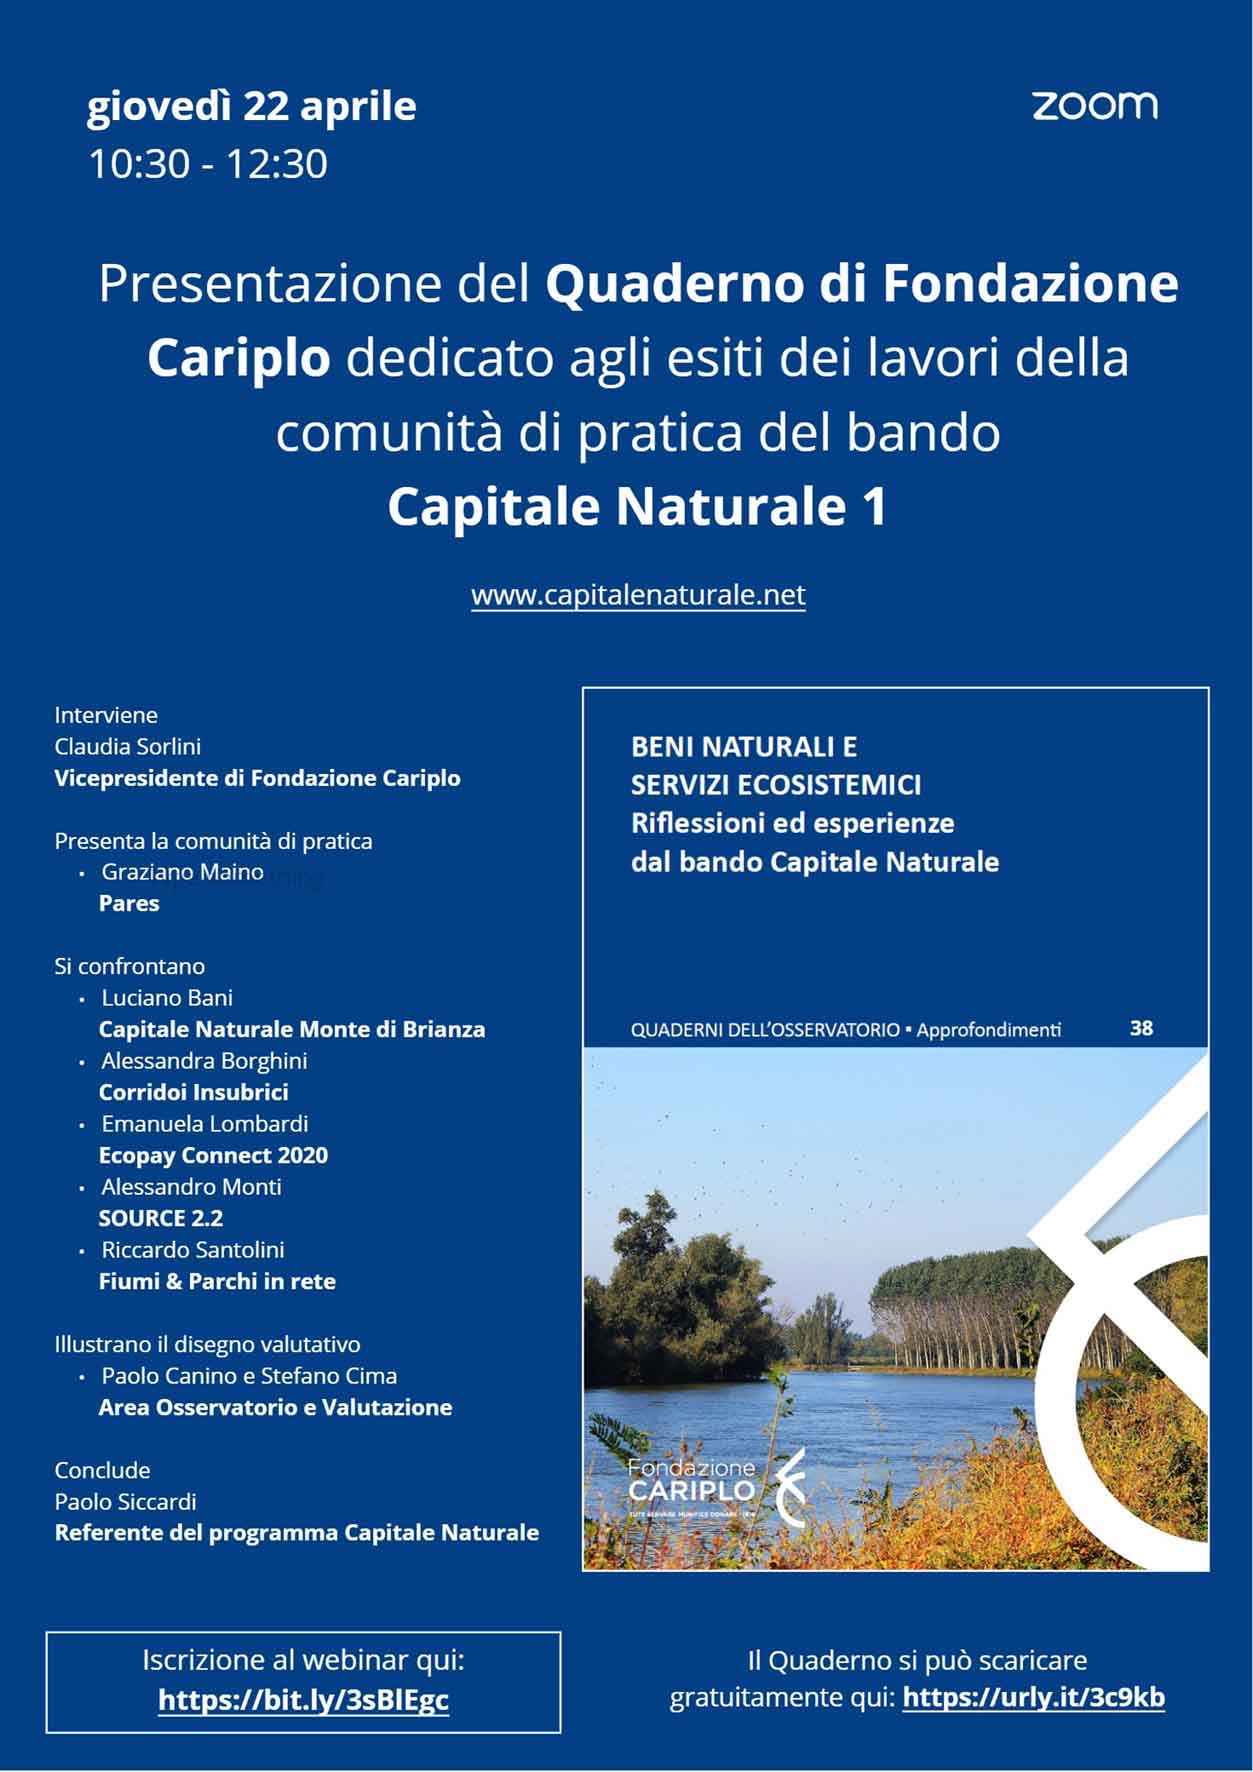 Presentazione del Quaderno di Fondazione Cariplo 